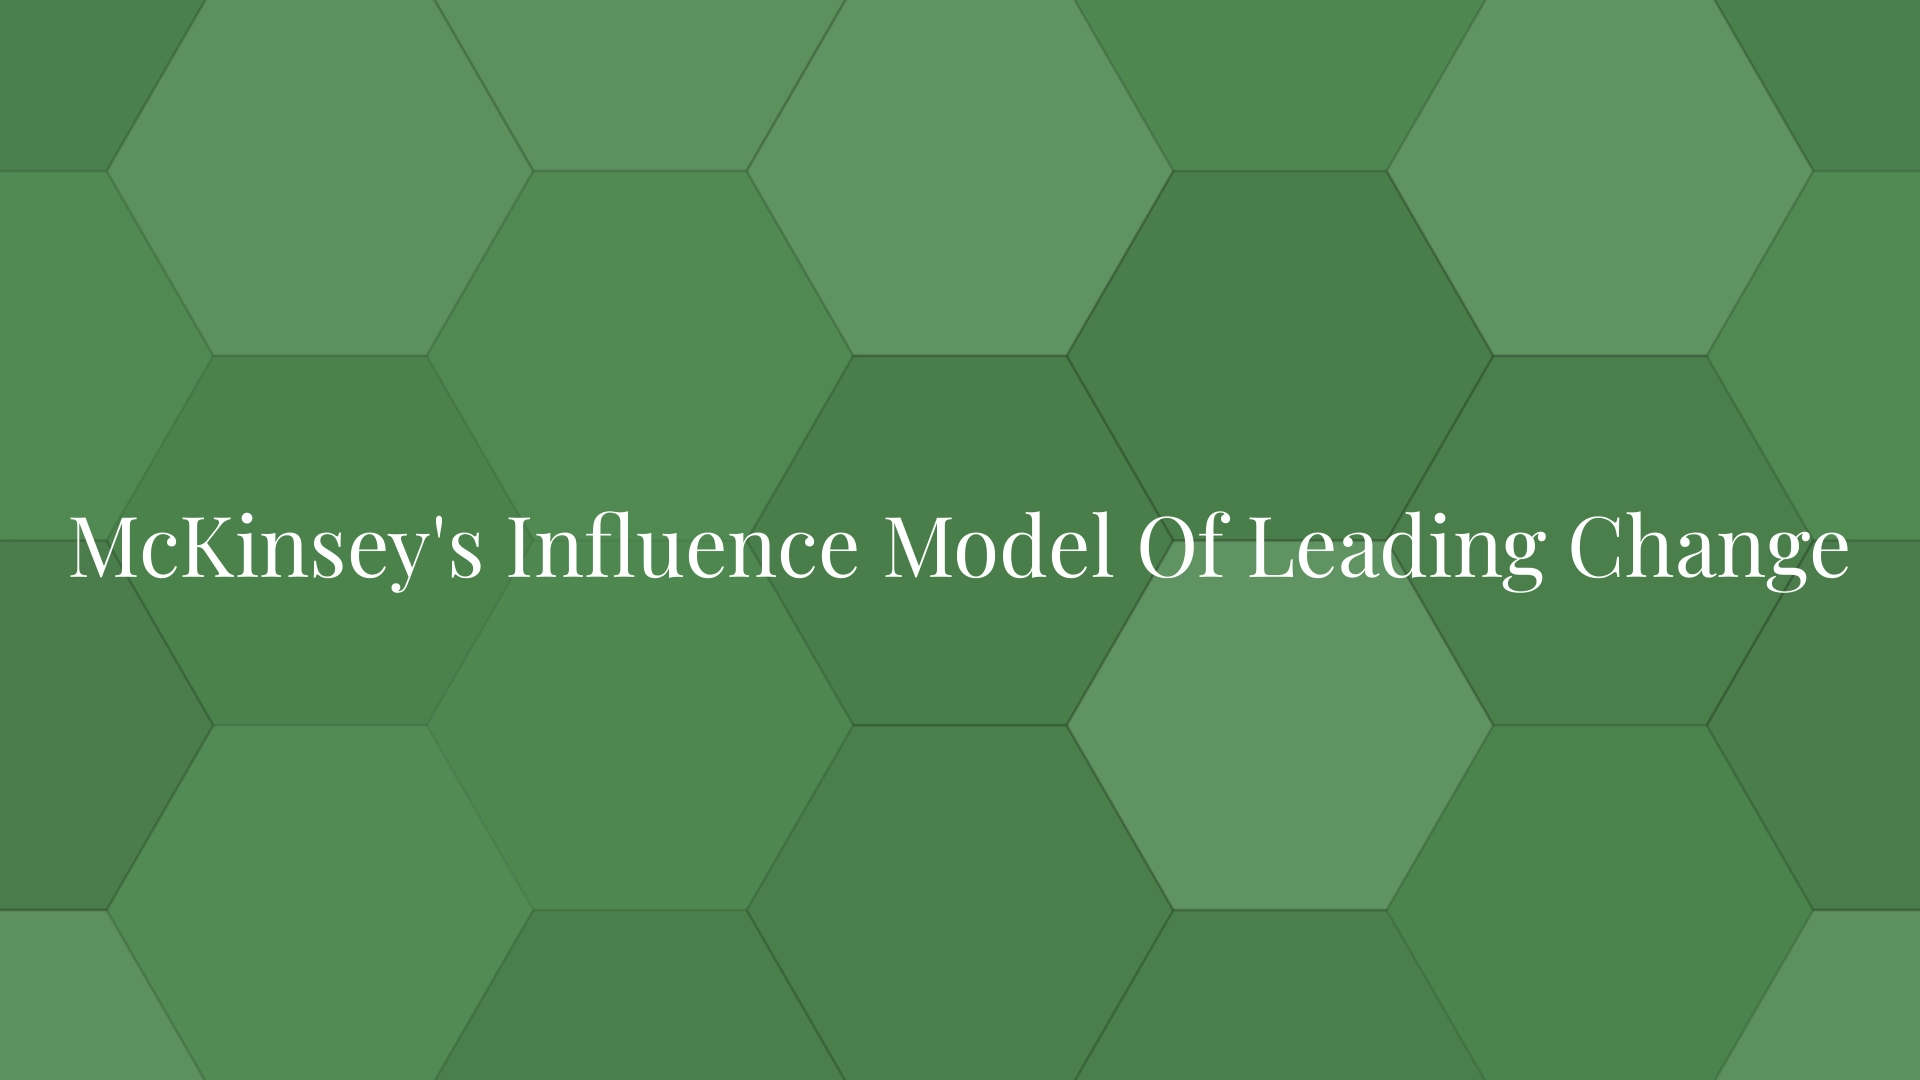 El modelo de influencia de McKinsey para liderar el cambio